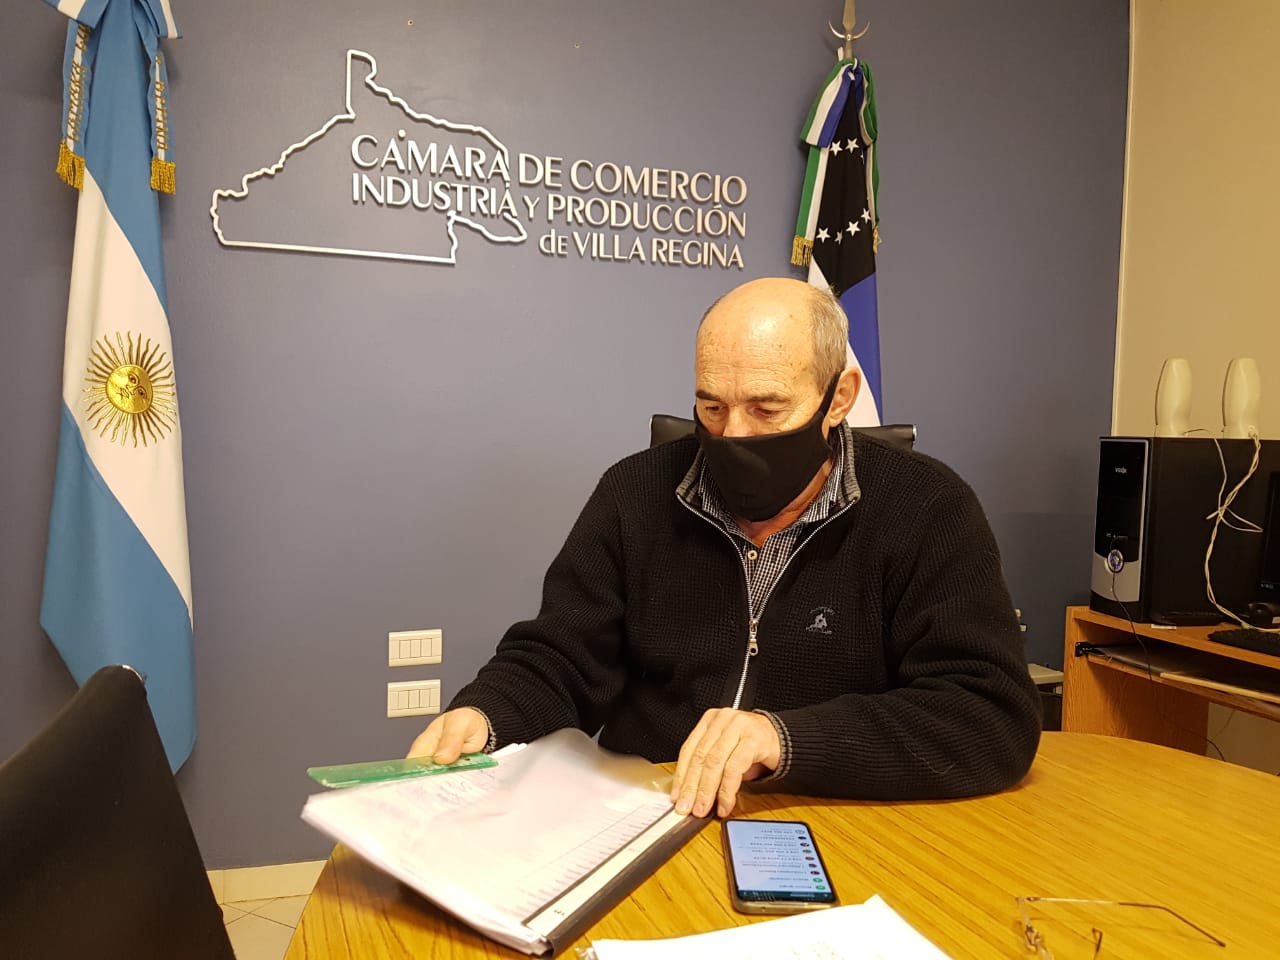 EL presidente de la Cámara de Comercio, solicitó analice extender el horario autorizado por decreto municipal. (Foto Néstor Salas)